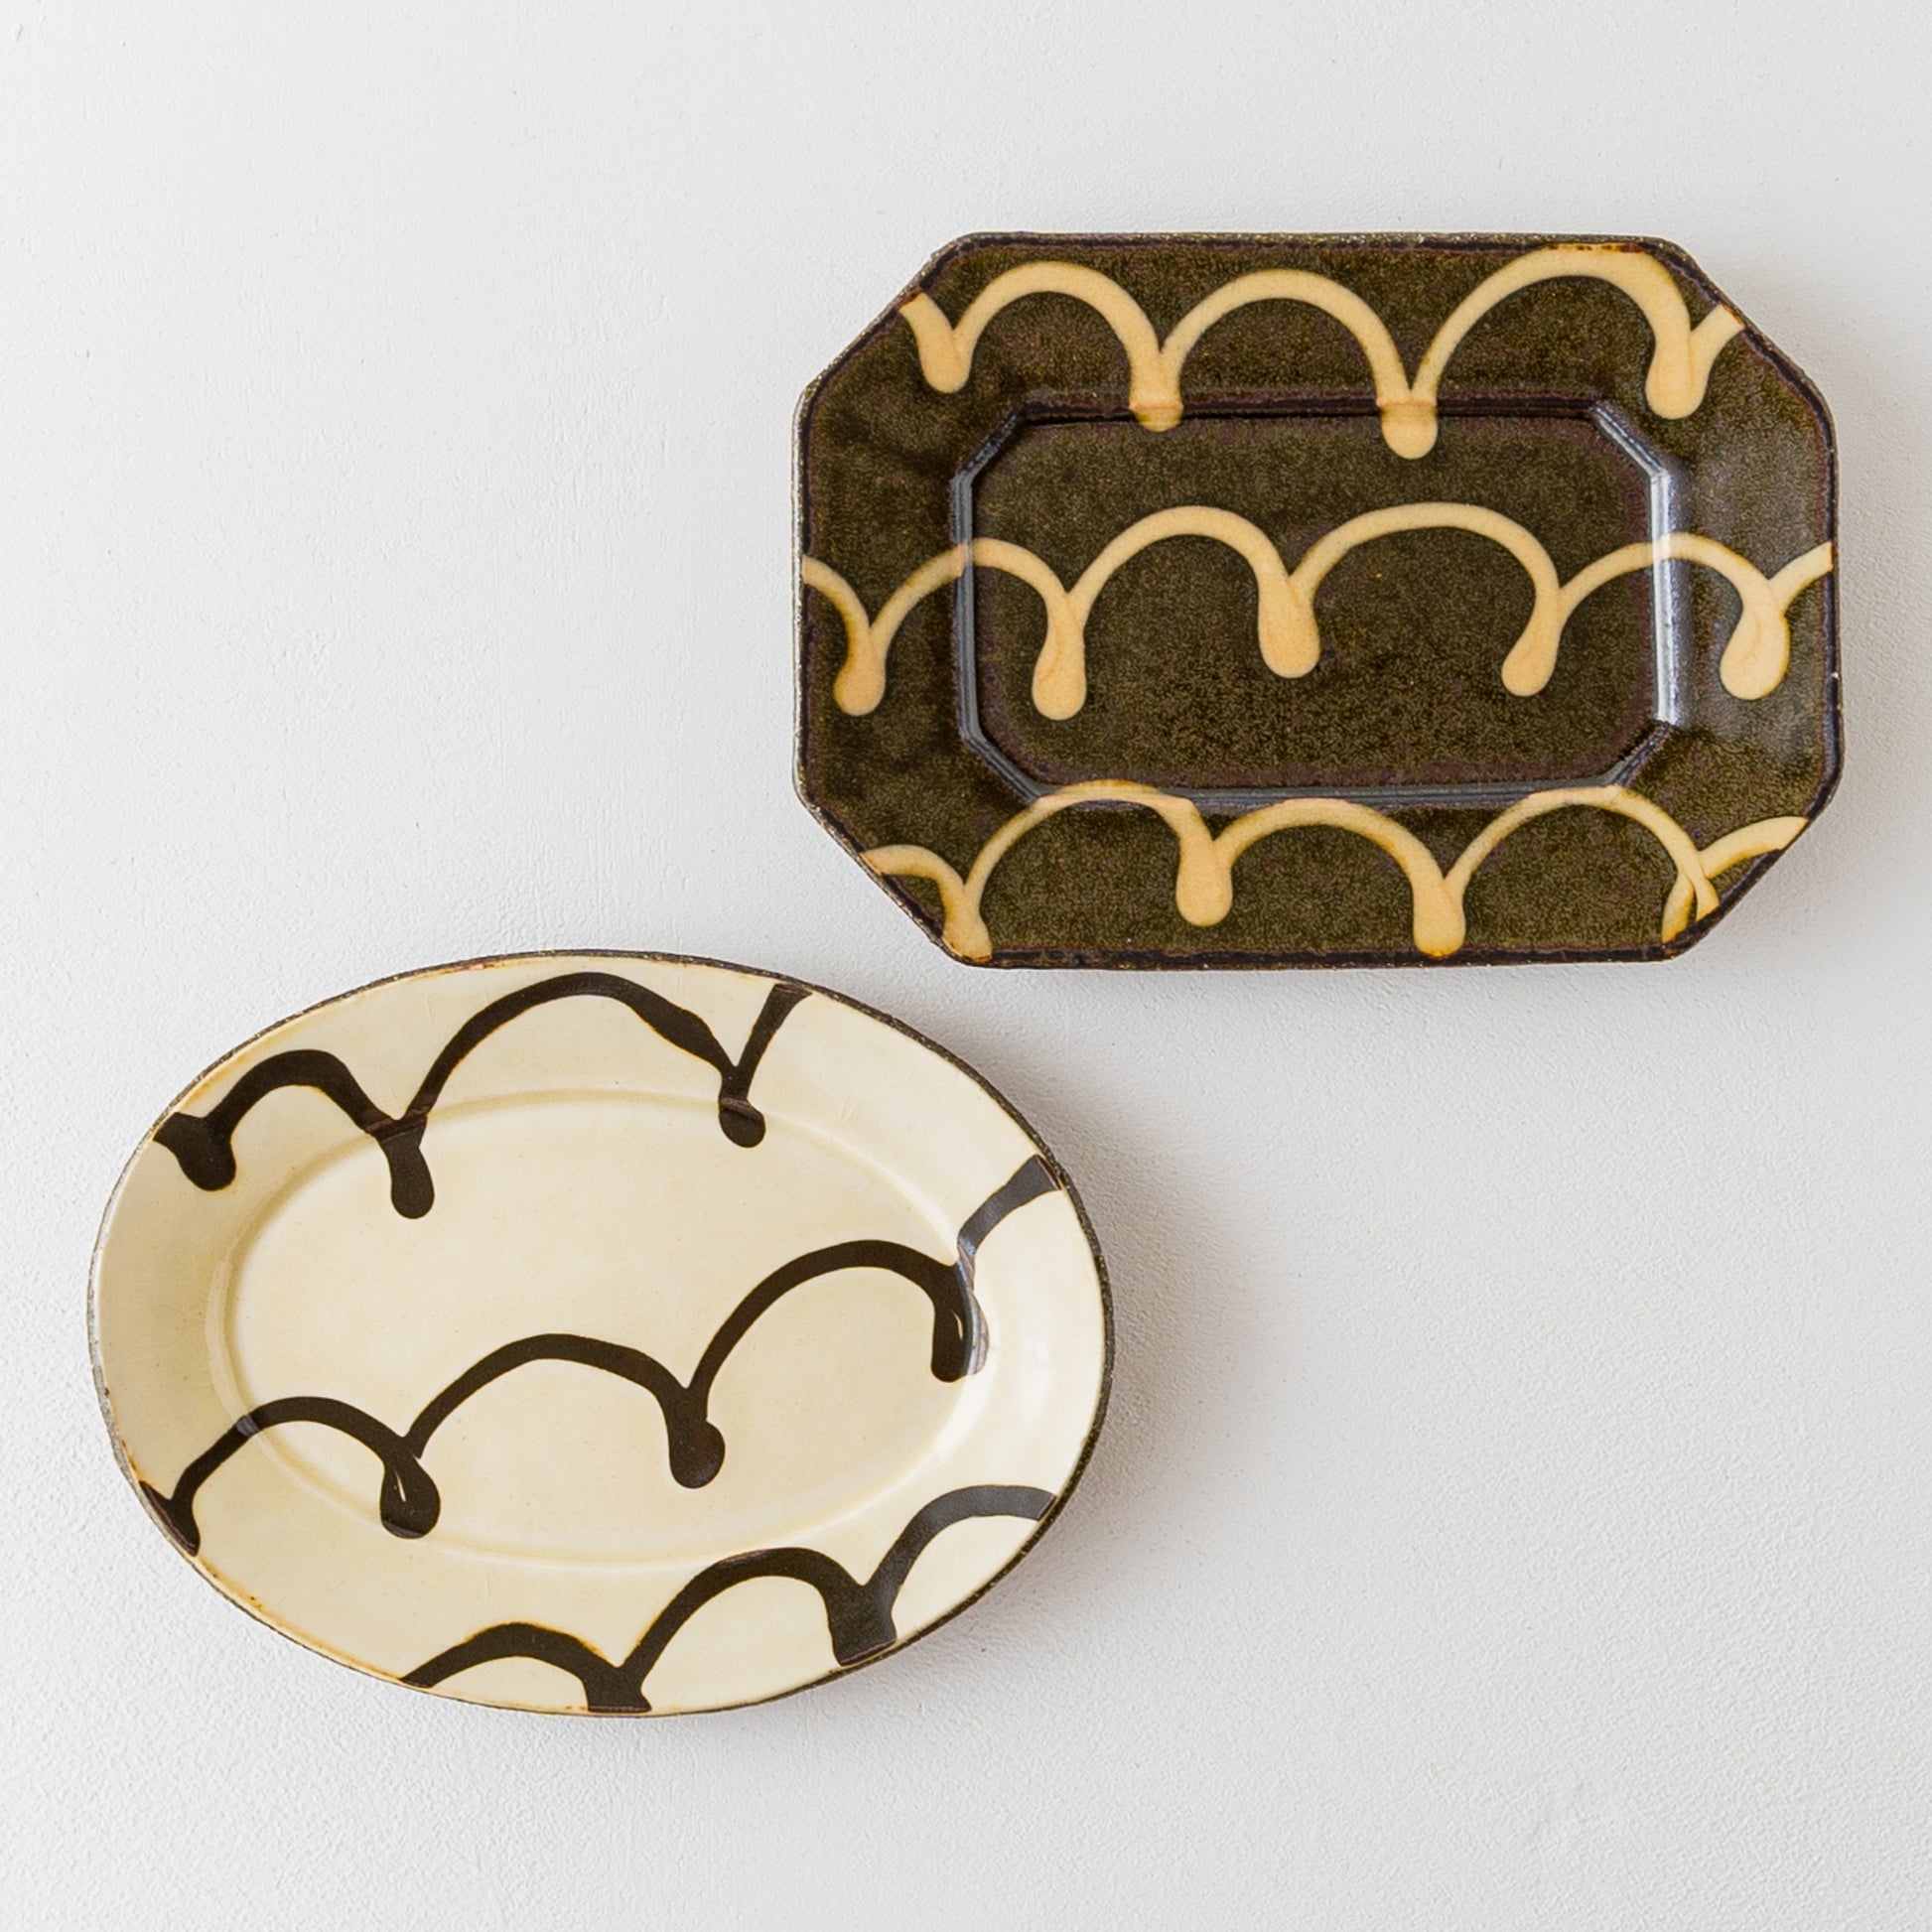 紀窯中川紀夫さんのスリップウェアくるくる模様長八角皿と楕円リム皿